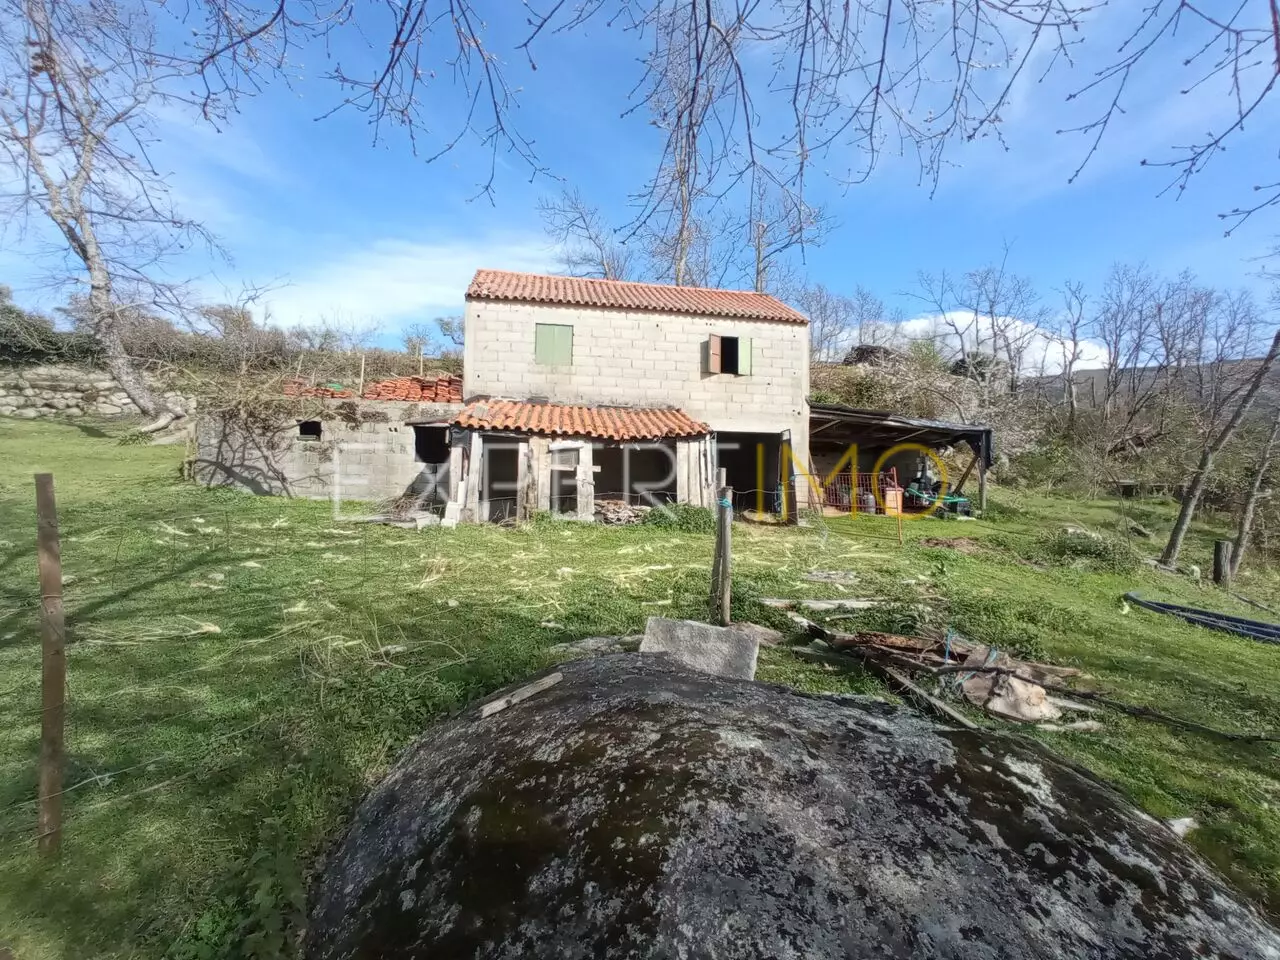 (13)QUINTA RURAL 2,269380 HECTARES, típica quinta portuguesa com casa para reconstrução, pastos verdejantes e árvores de fruto